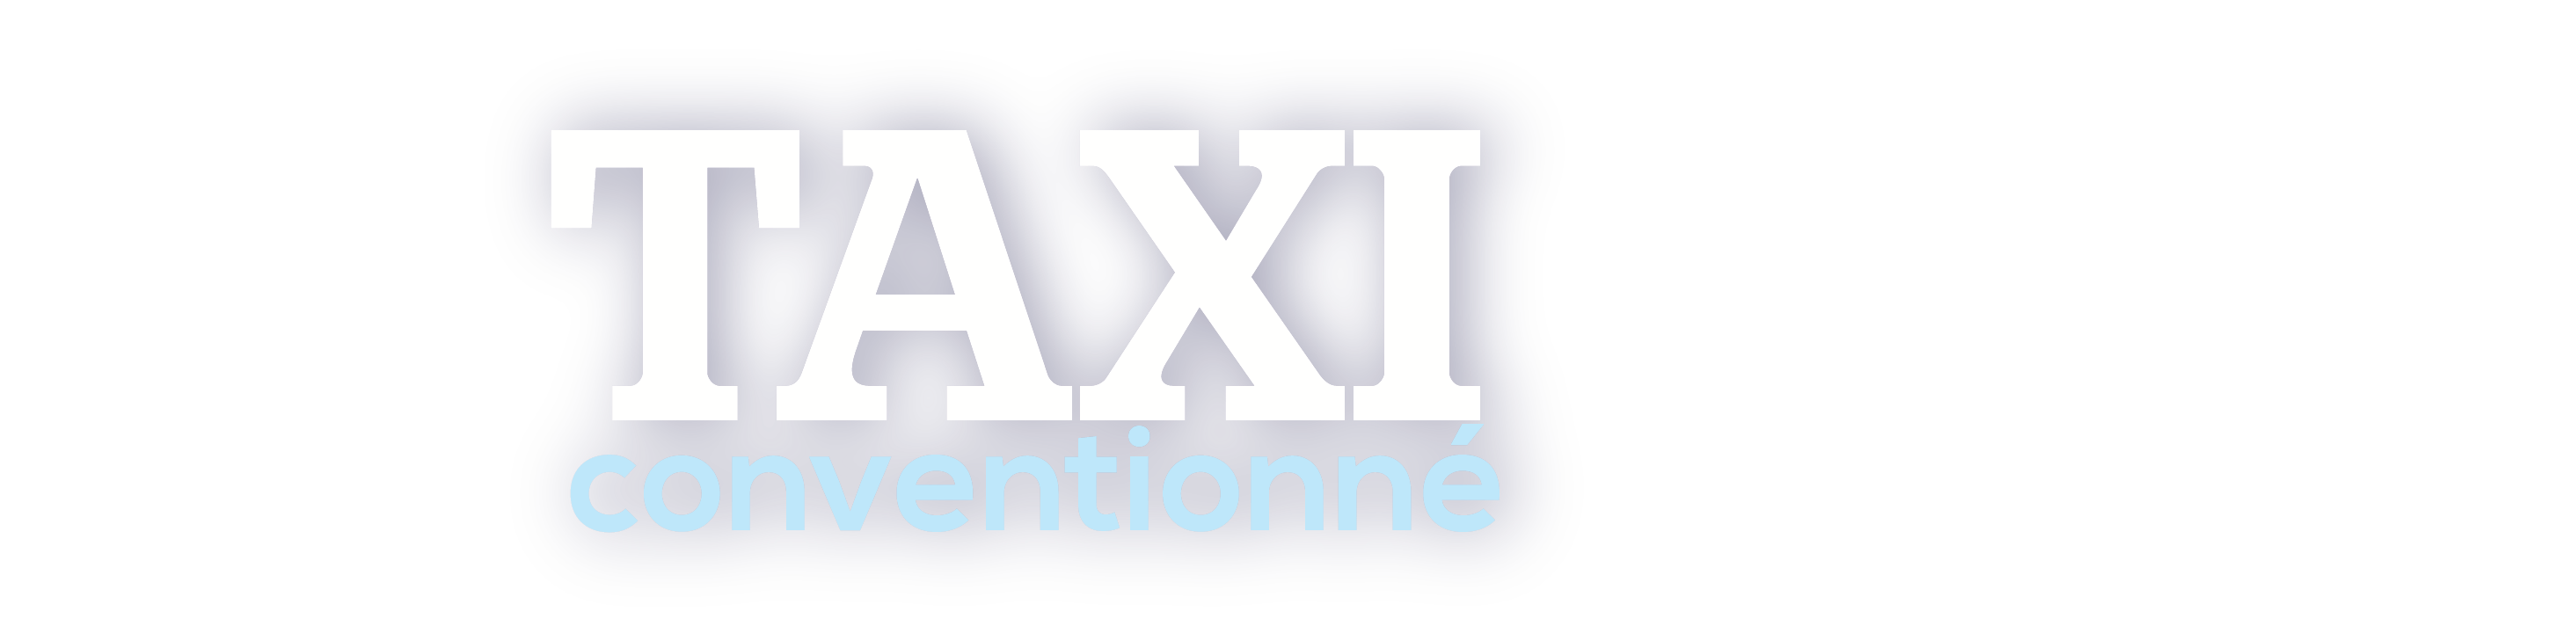 Votre taxi conventionné en Ile de France Logo